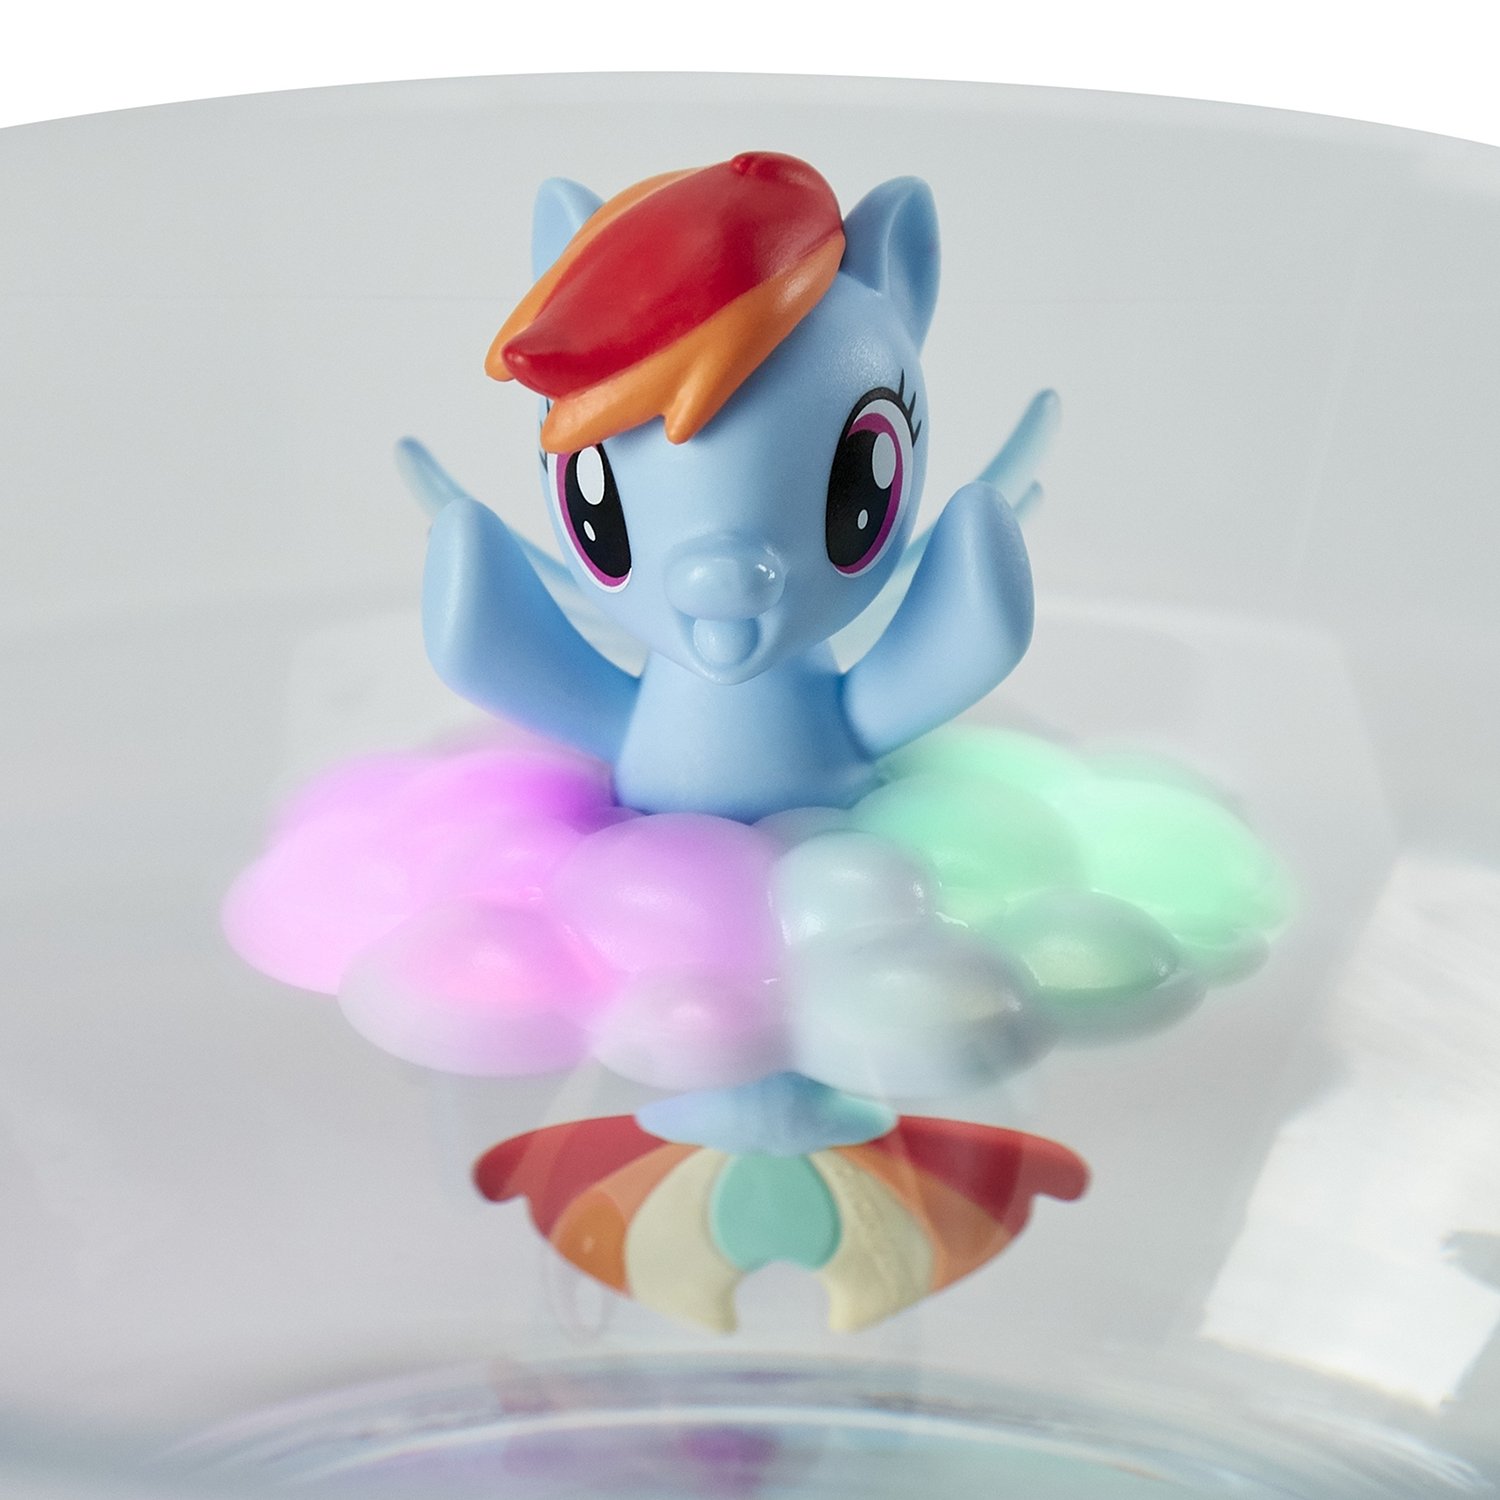 Игрушка My Little Pony Морская коллекция Пони Рейнбоу Дэш E5172EU4